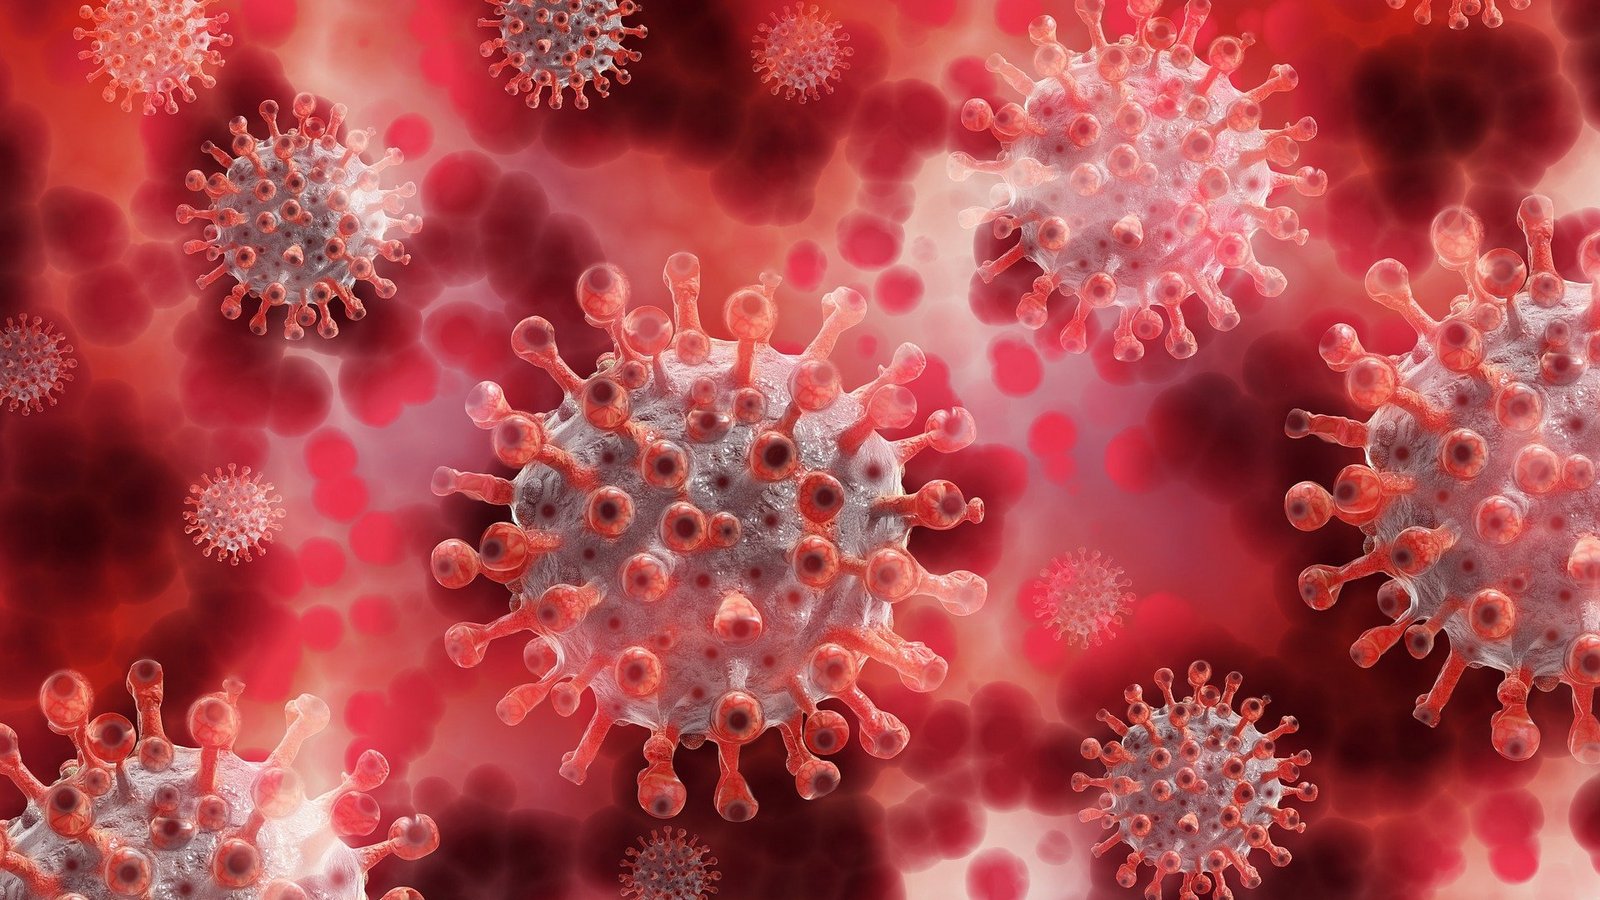 Genetičari s IRB-a identificirali su prisutnost omikron varijante koronavirusa